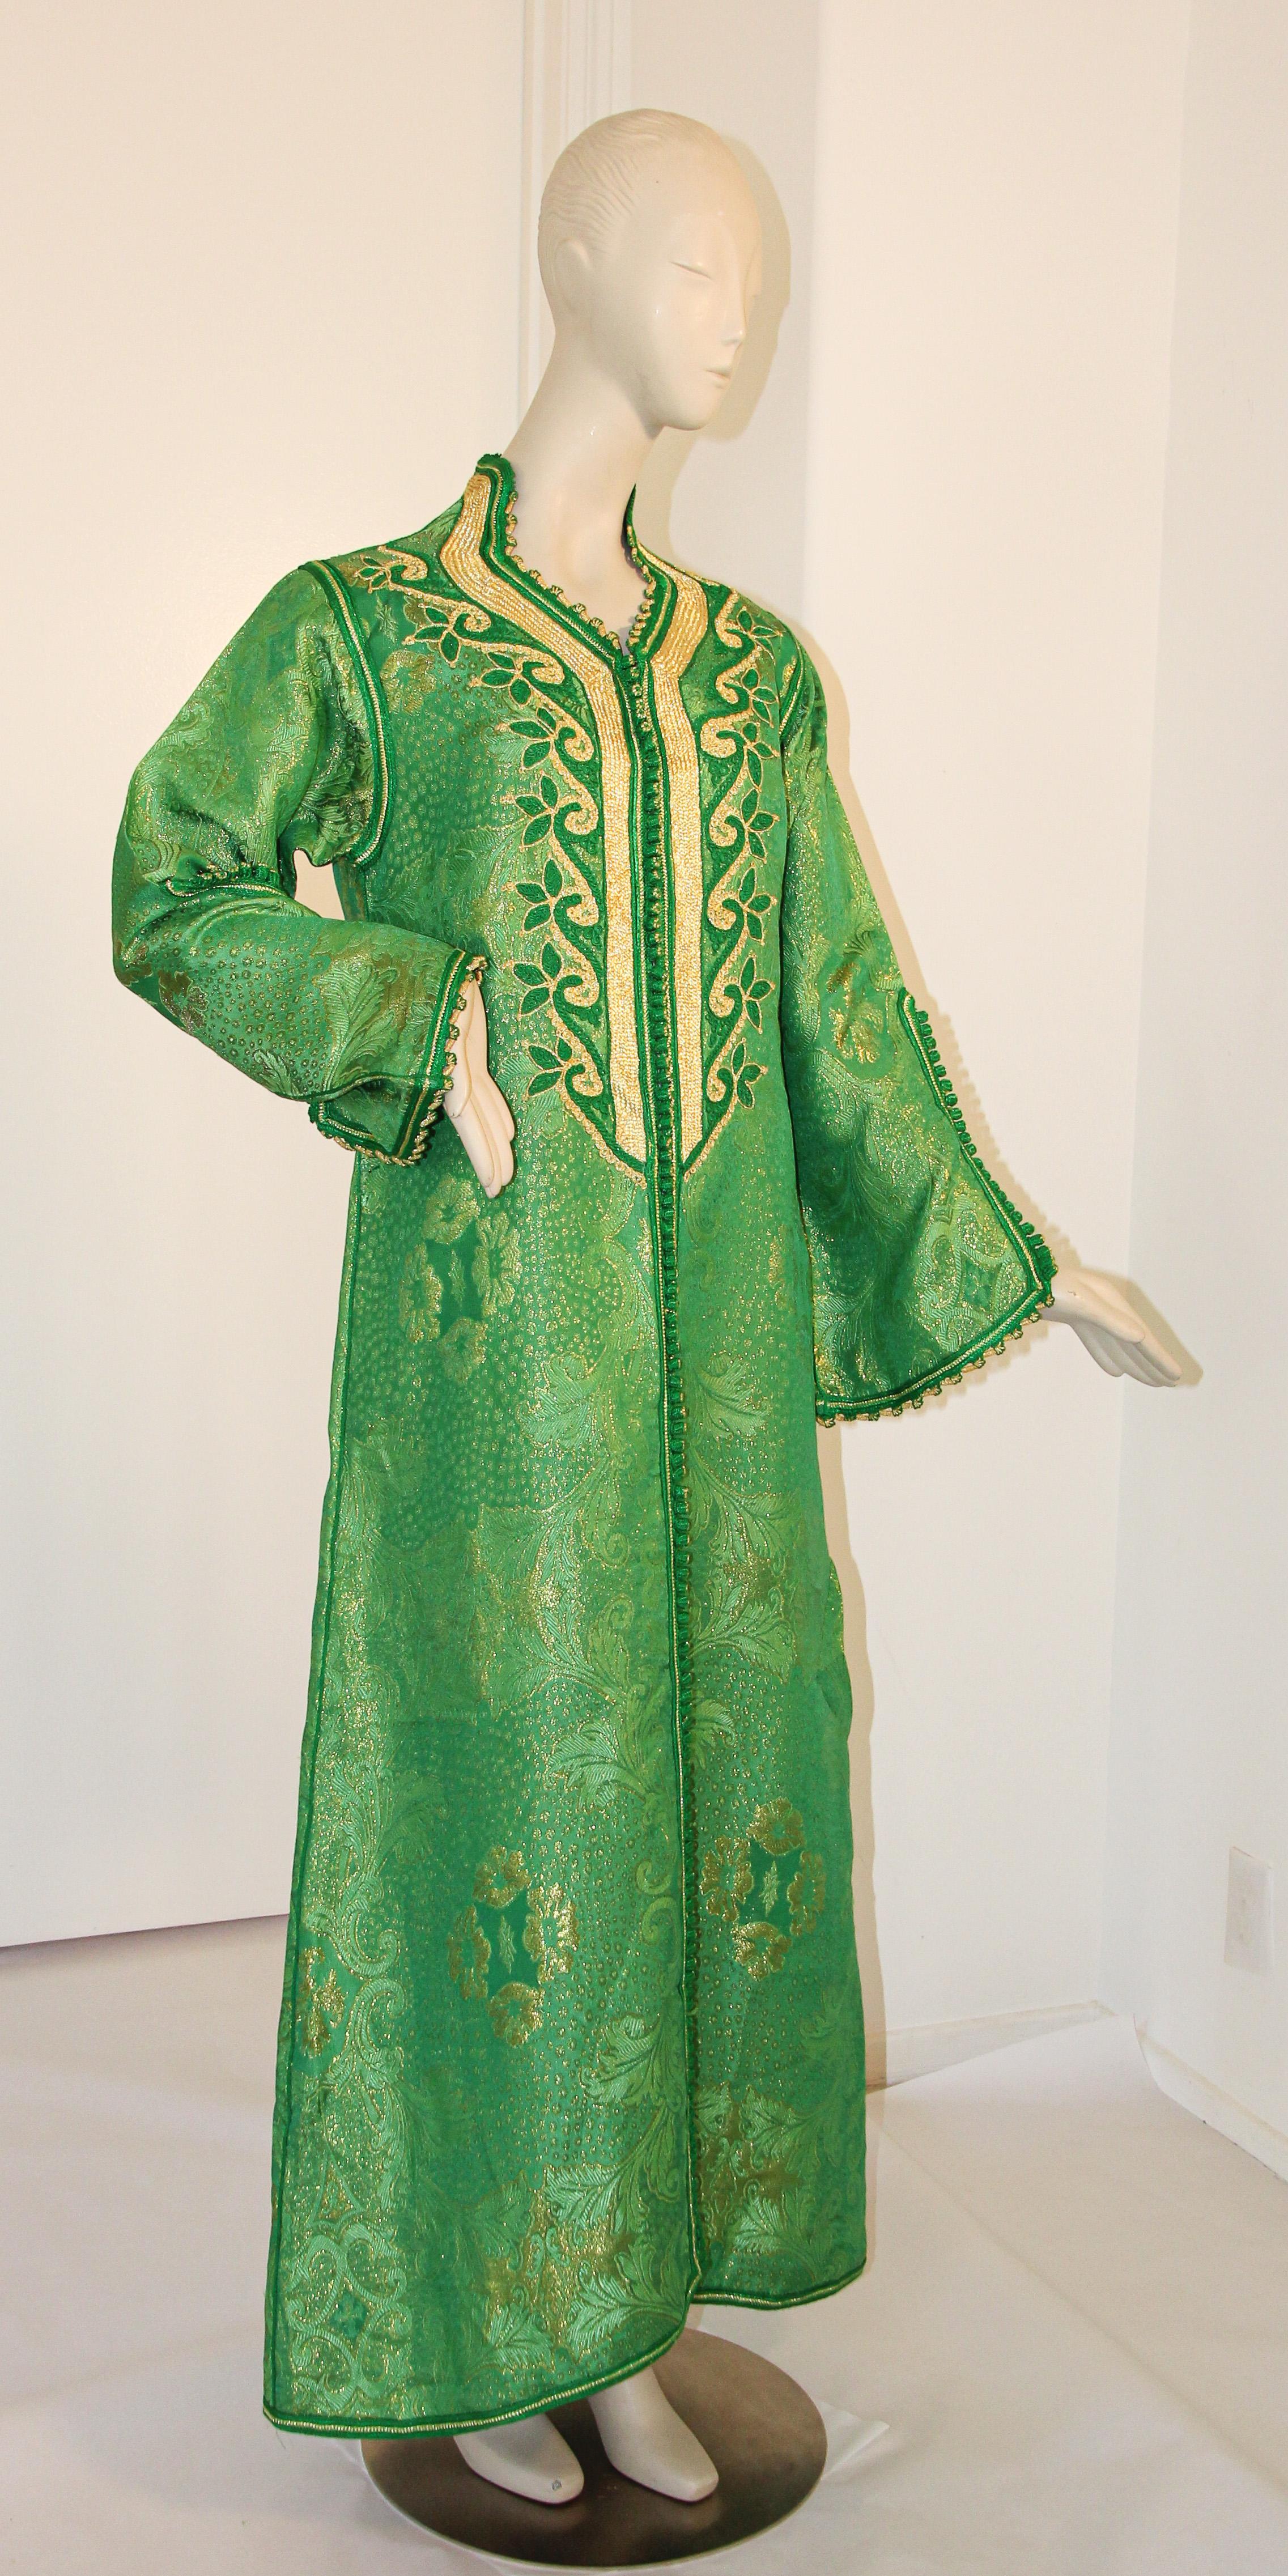 1960s Elegant caftan marocain vert émeraude et or lame brocart métallique,
Il s'agit d'un exemple exceptionnel de la mode marocaine,
Fabriqué à la main au Maroc et taillé pour une coupe décontractée avec des manches larges, il est confectionné dans